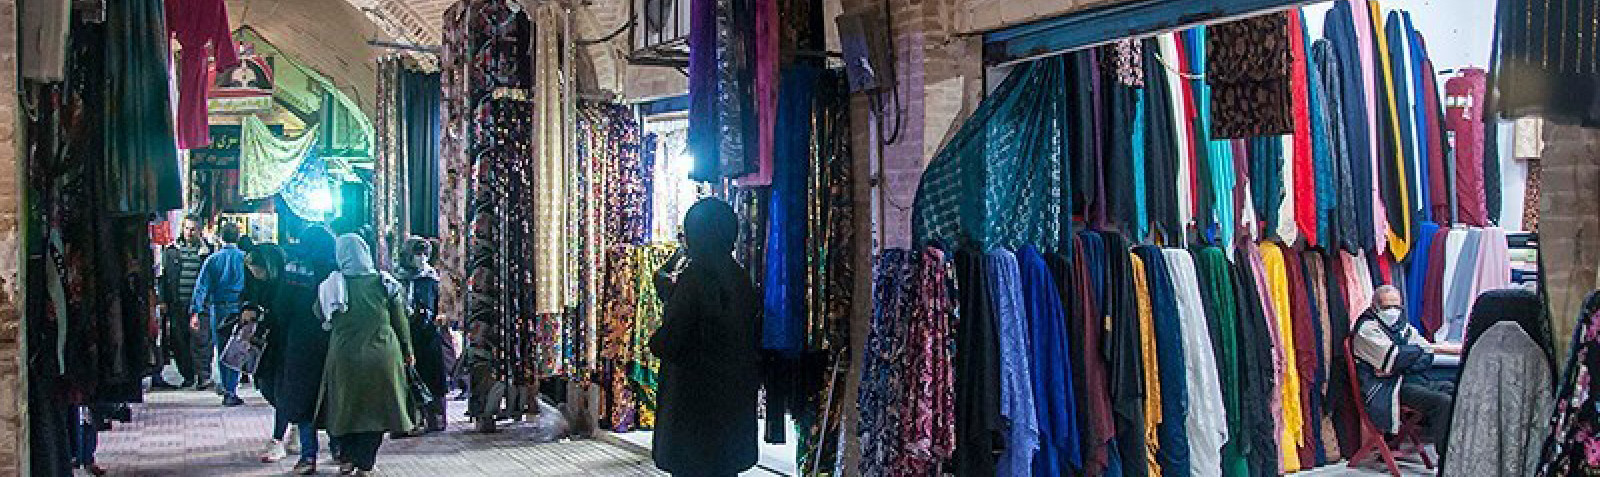 Kermanshah Bazaar